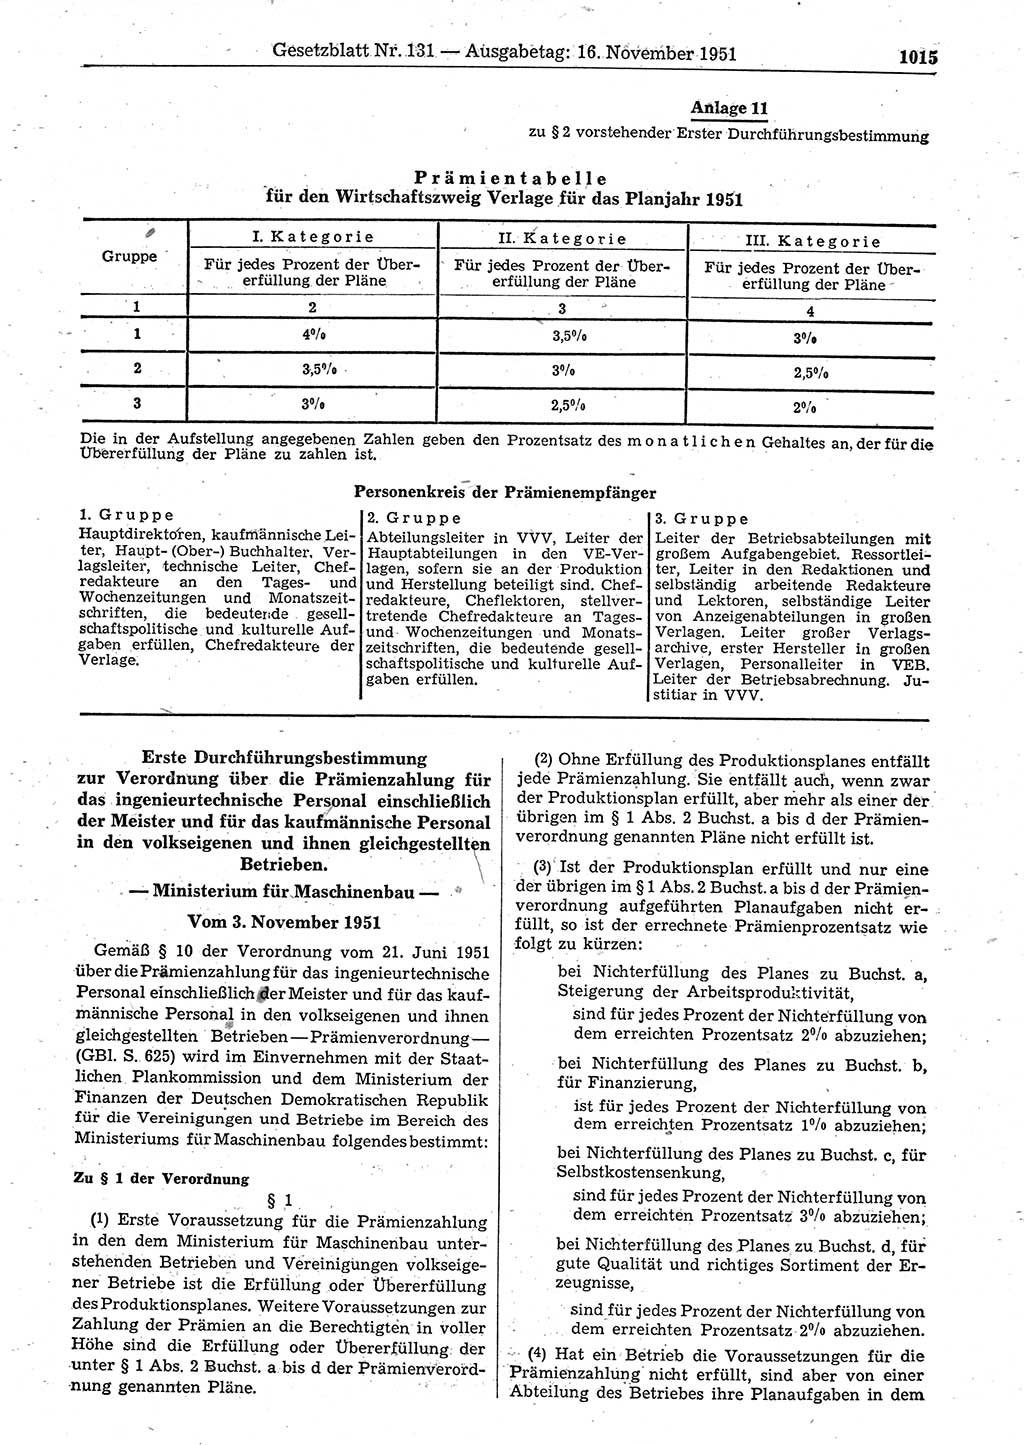 Gesetzblatt (GBl.) der Deutschen Demokratischen Republik (DDR) 1951, Seite 1015 (GBl. DDR 1951, S. 1015)